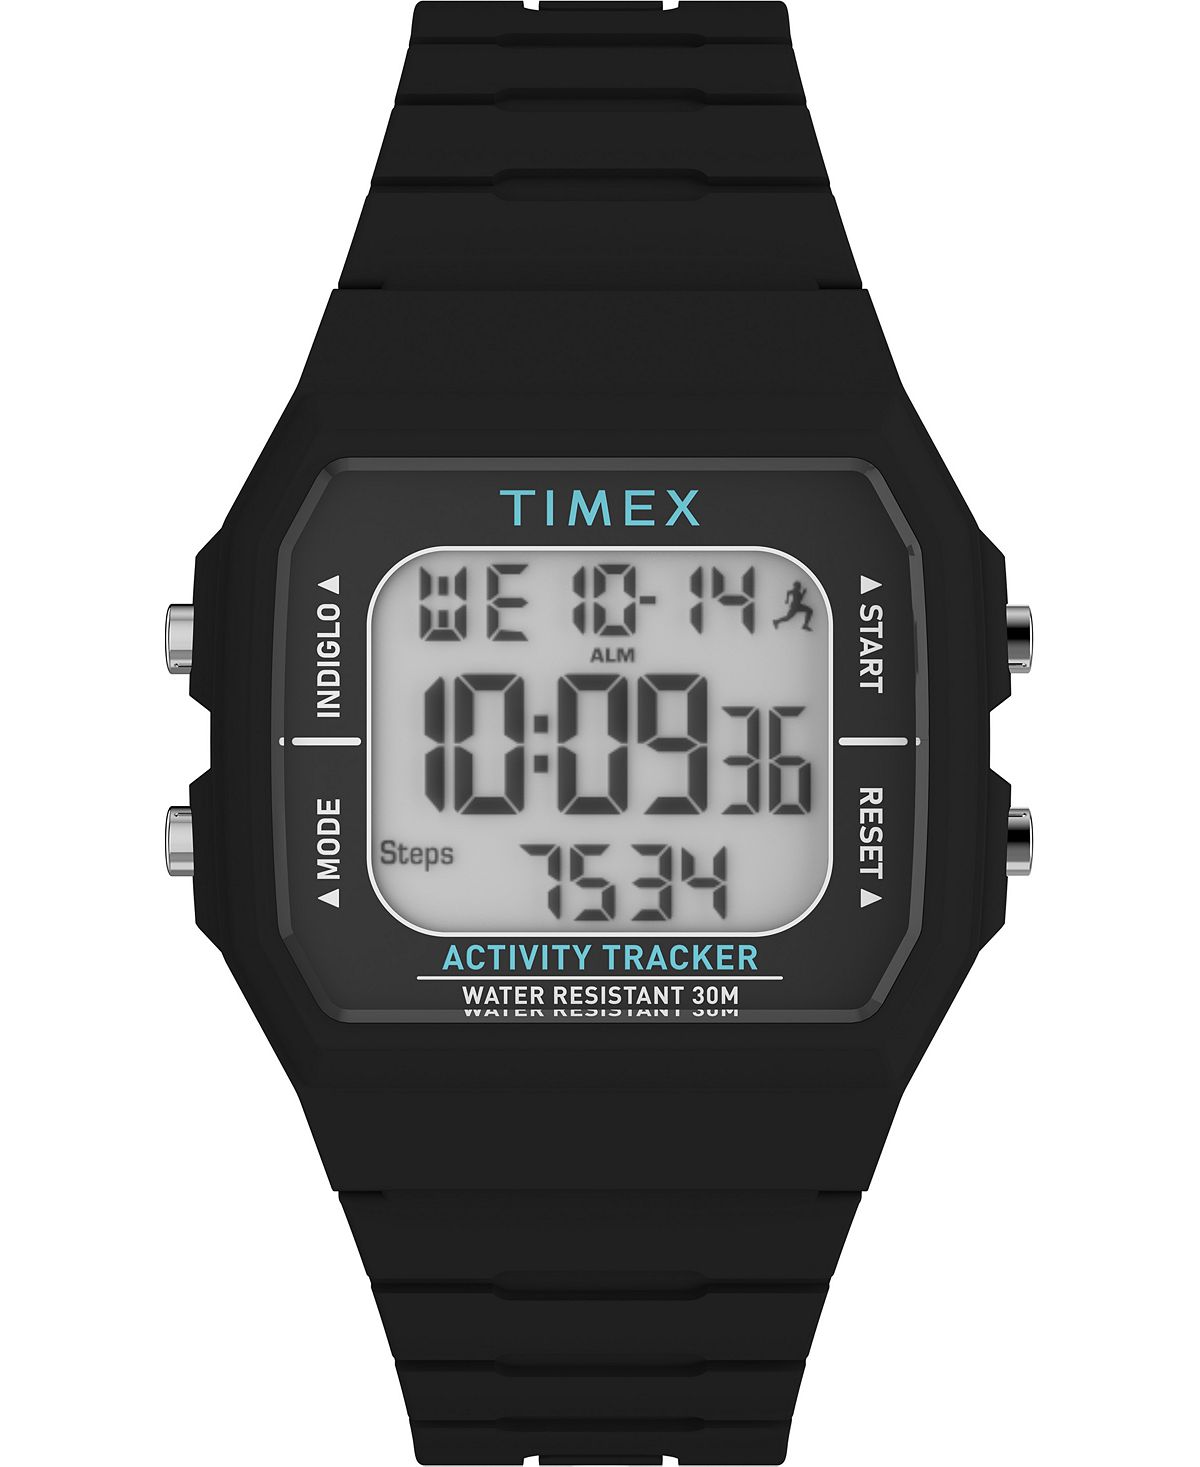 Унисекс цифровые цифровые часы Ironman Classic черные силиконовые 40 мм Timex, черный behringer media 40usb цифровые студийные мониторы 40 вт